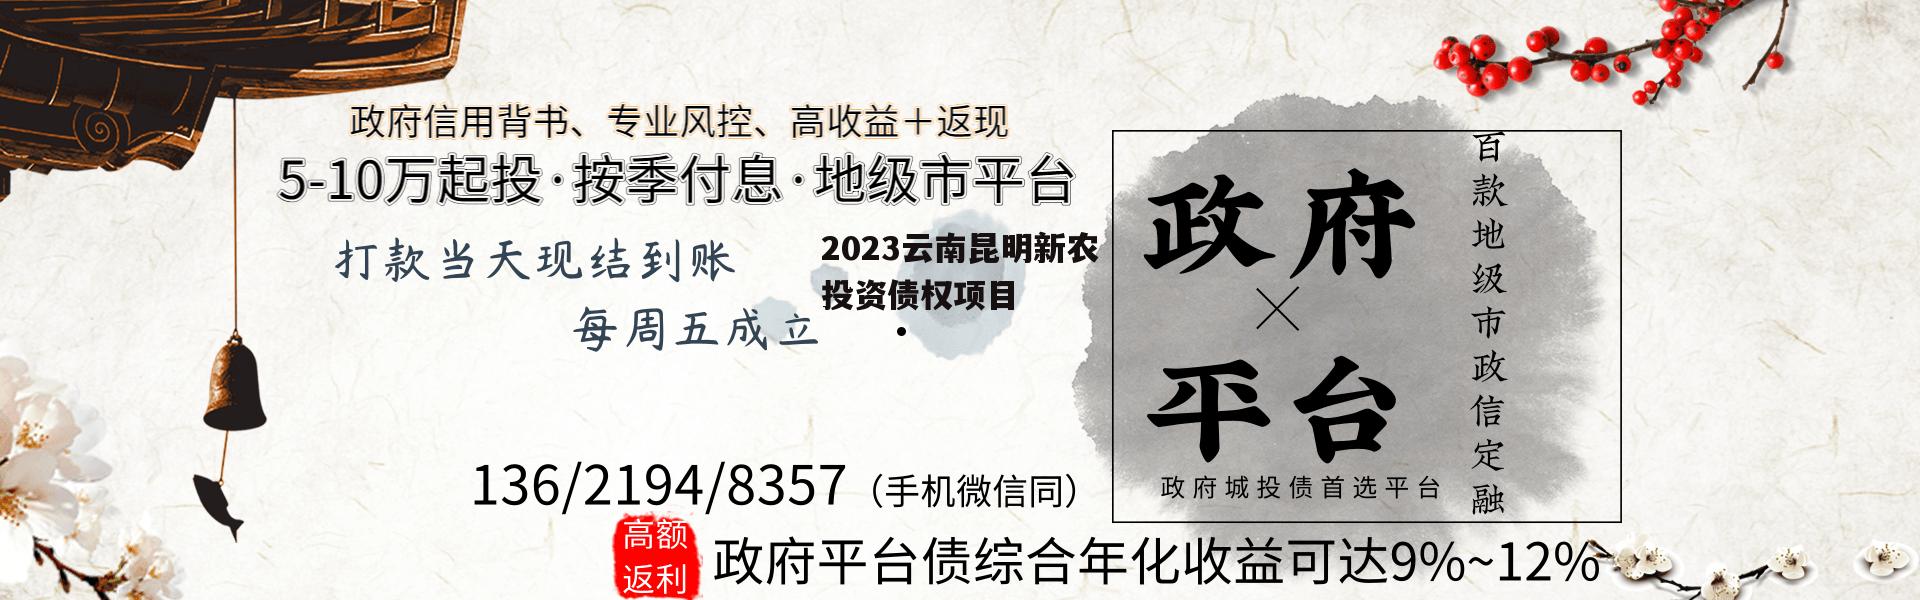 2023云南昆明新农投资债权项目